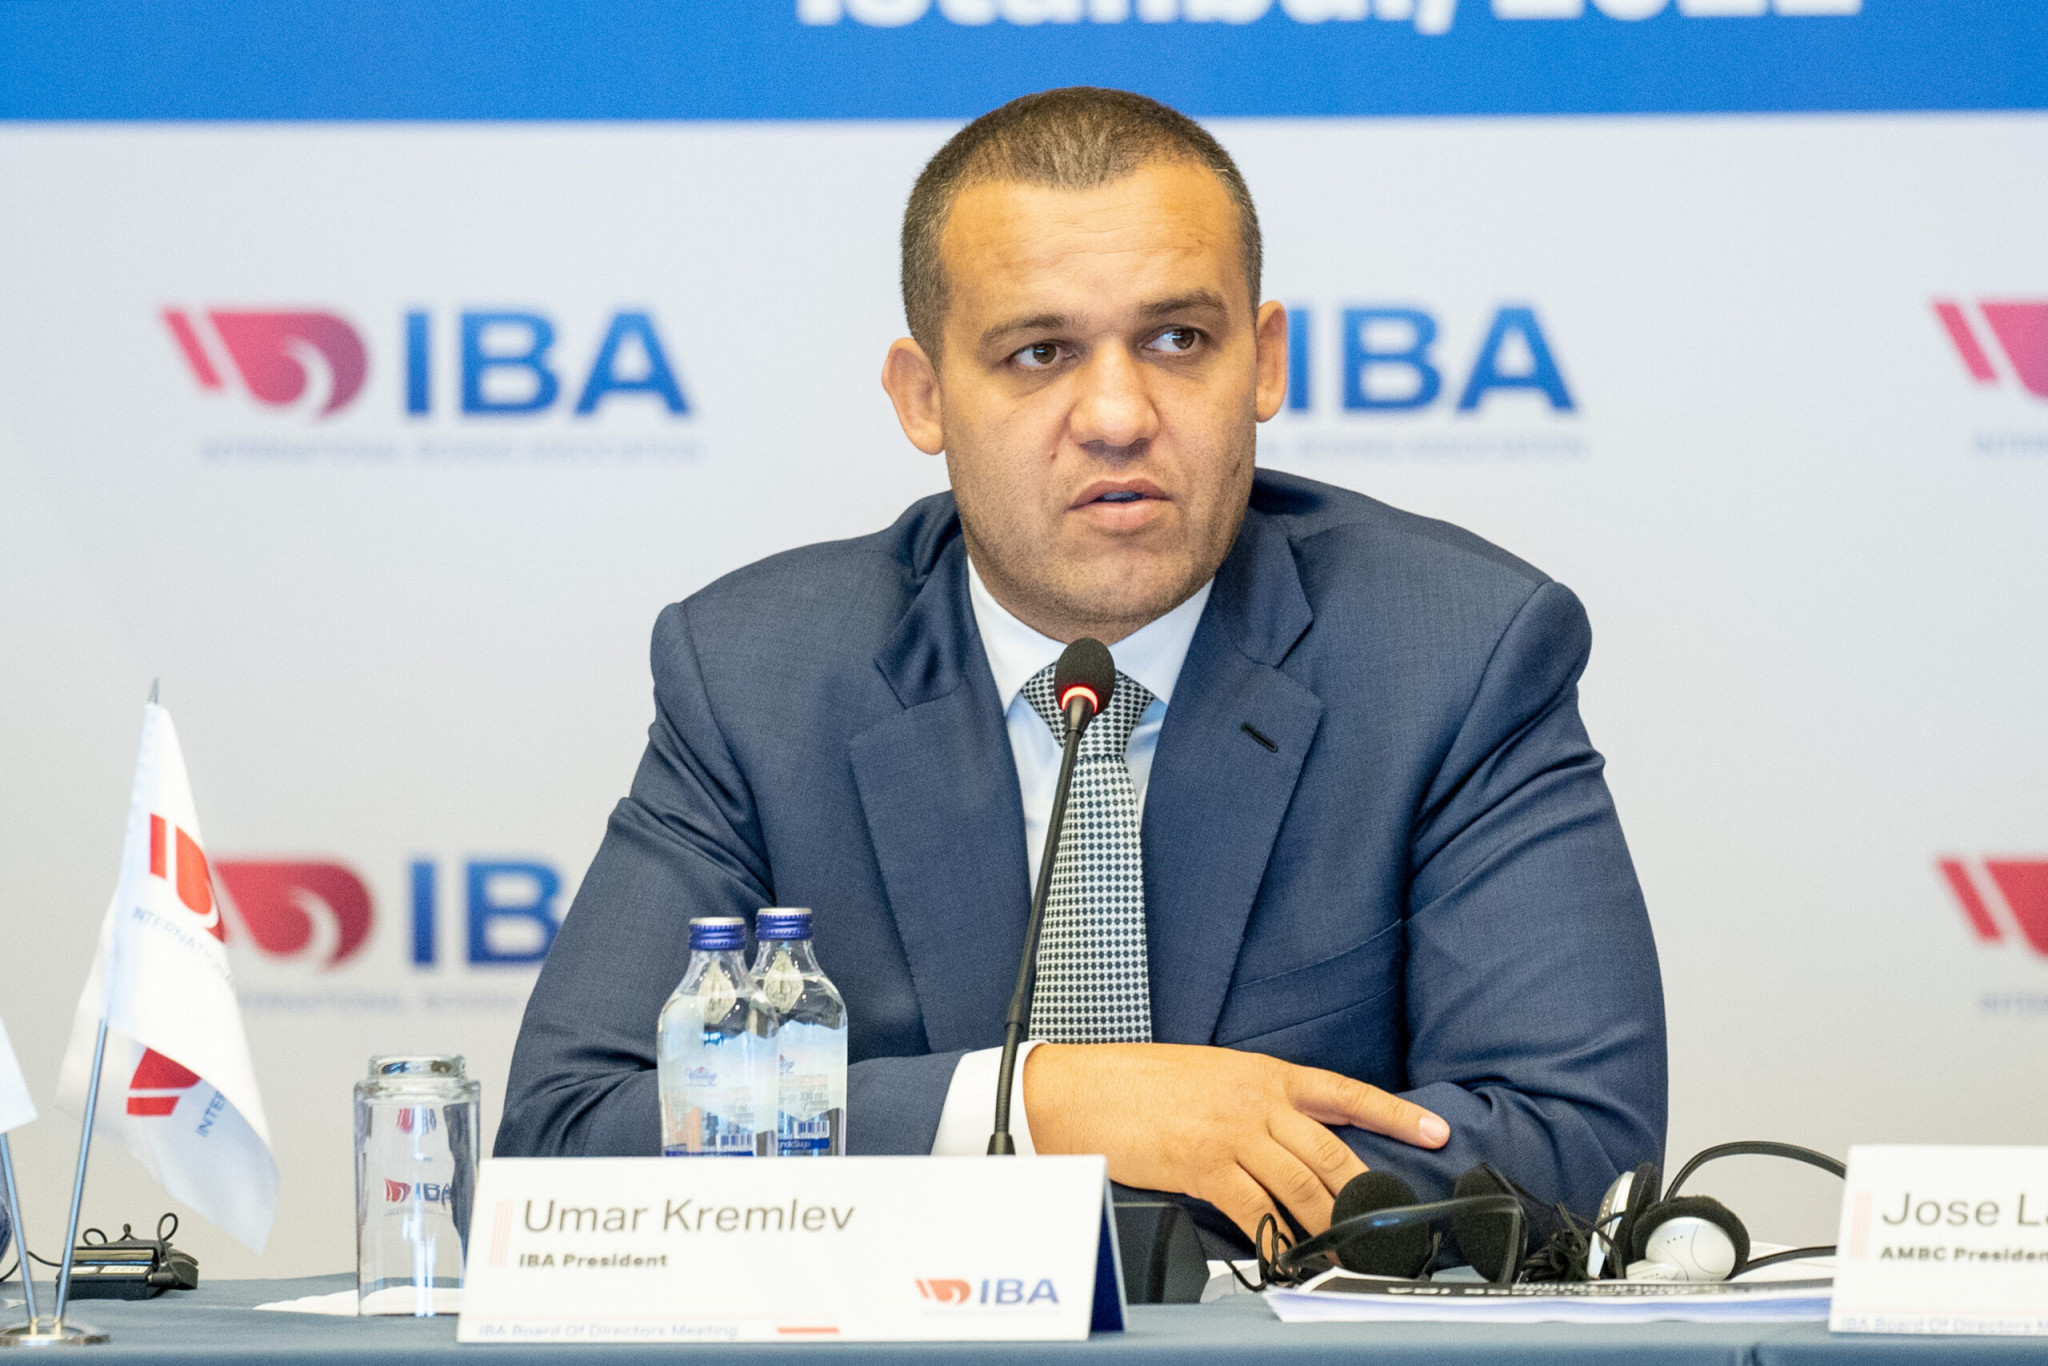 Russian official Umar Kremlev has led IBA since December 2020 ©IBA